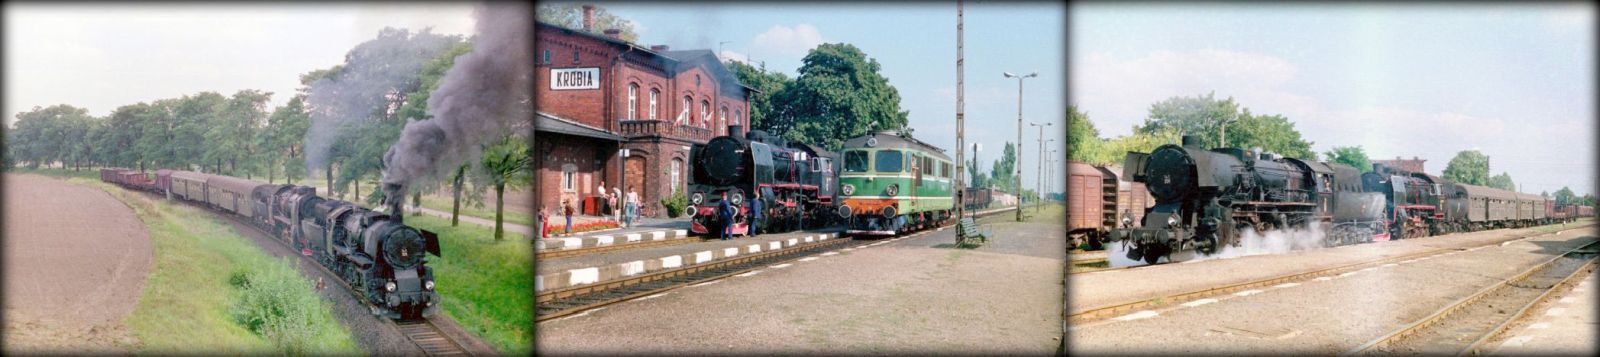 od lewej:Krotoszyn - Krobia w dniu 10.09.1988. Parowóz jako pierwszy Ty2-331 z Jarocina 32D43-177, jako drugi Parowóz jako drugi Ty45-379 ze Zbąszynka 27D47-35, Krobia, stacja końcowa tego przejazdu, Kobylin,.